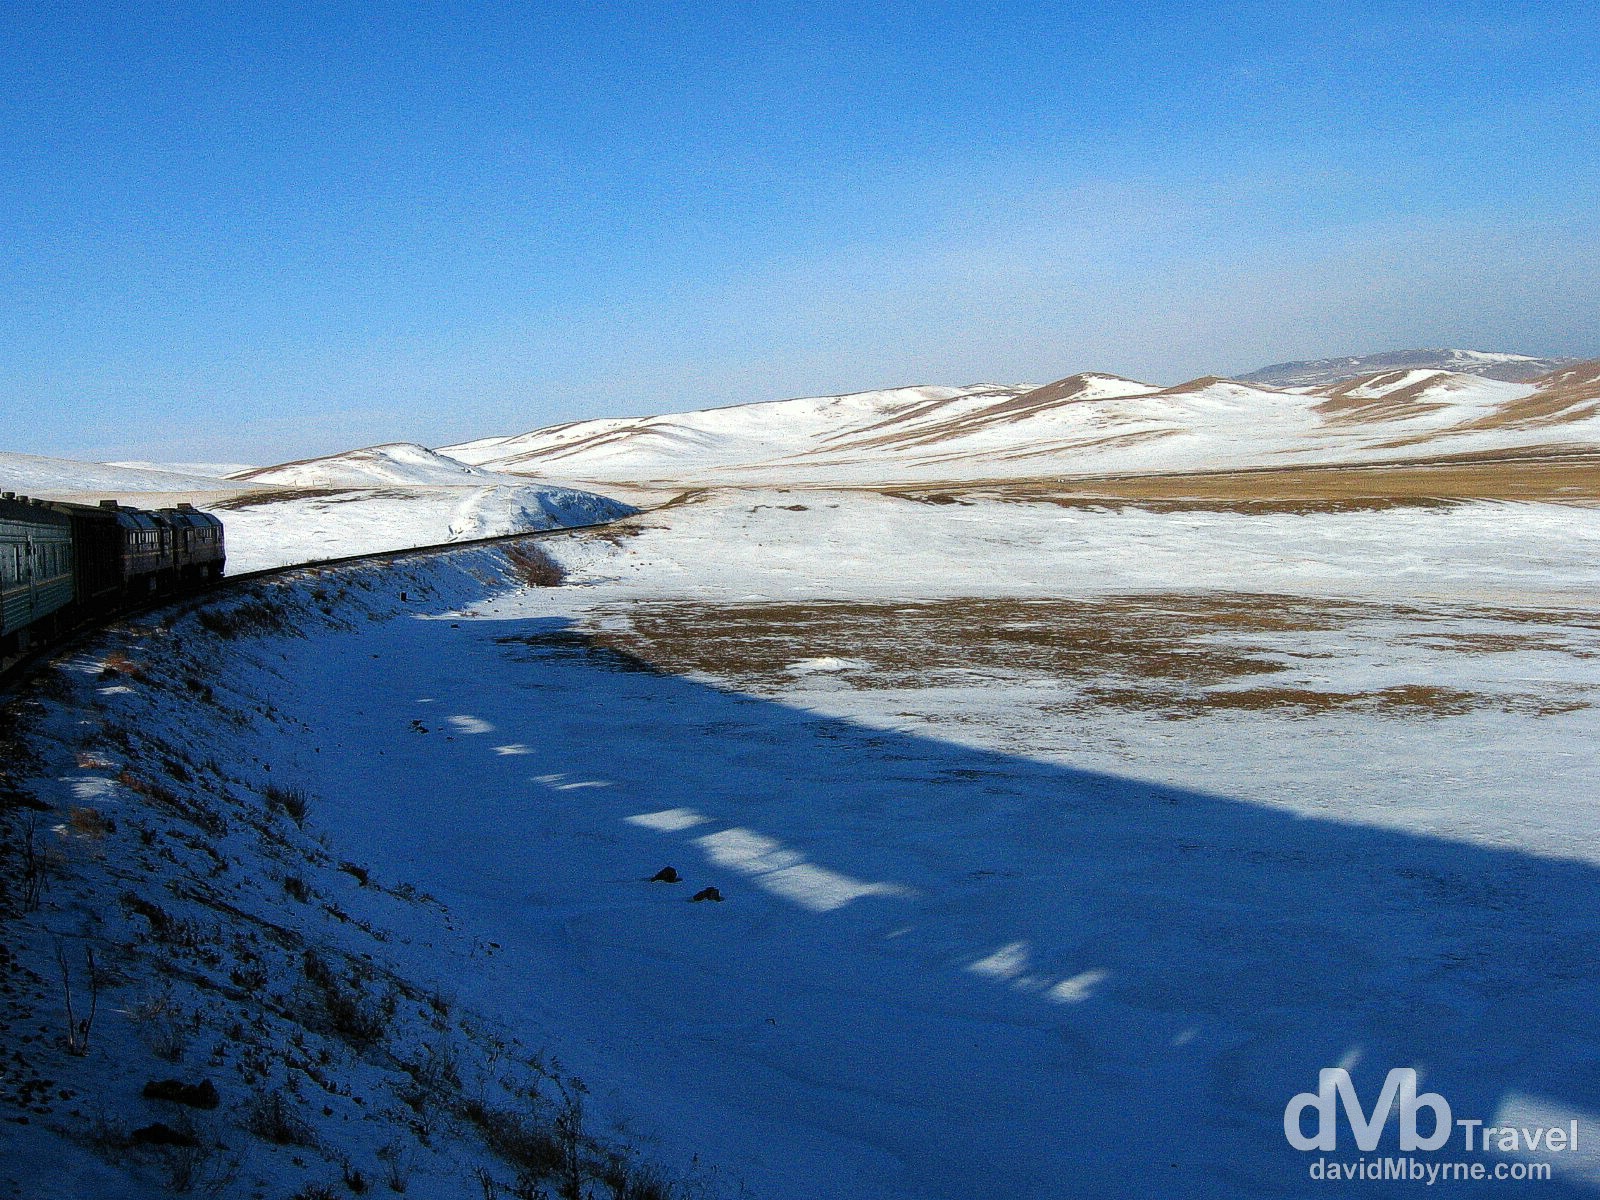 Countryside as seen from the Trans-Mongolian train approaching the Mongolian capital of Ulan Bator. February 15, 2006. 